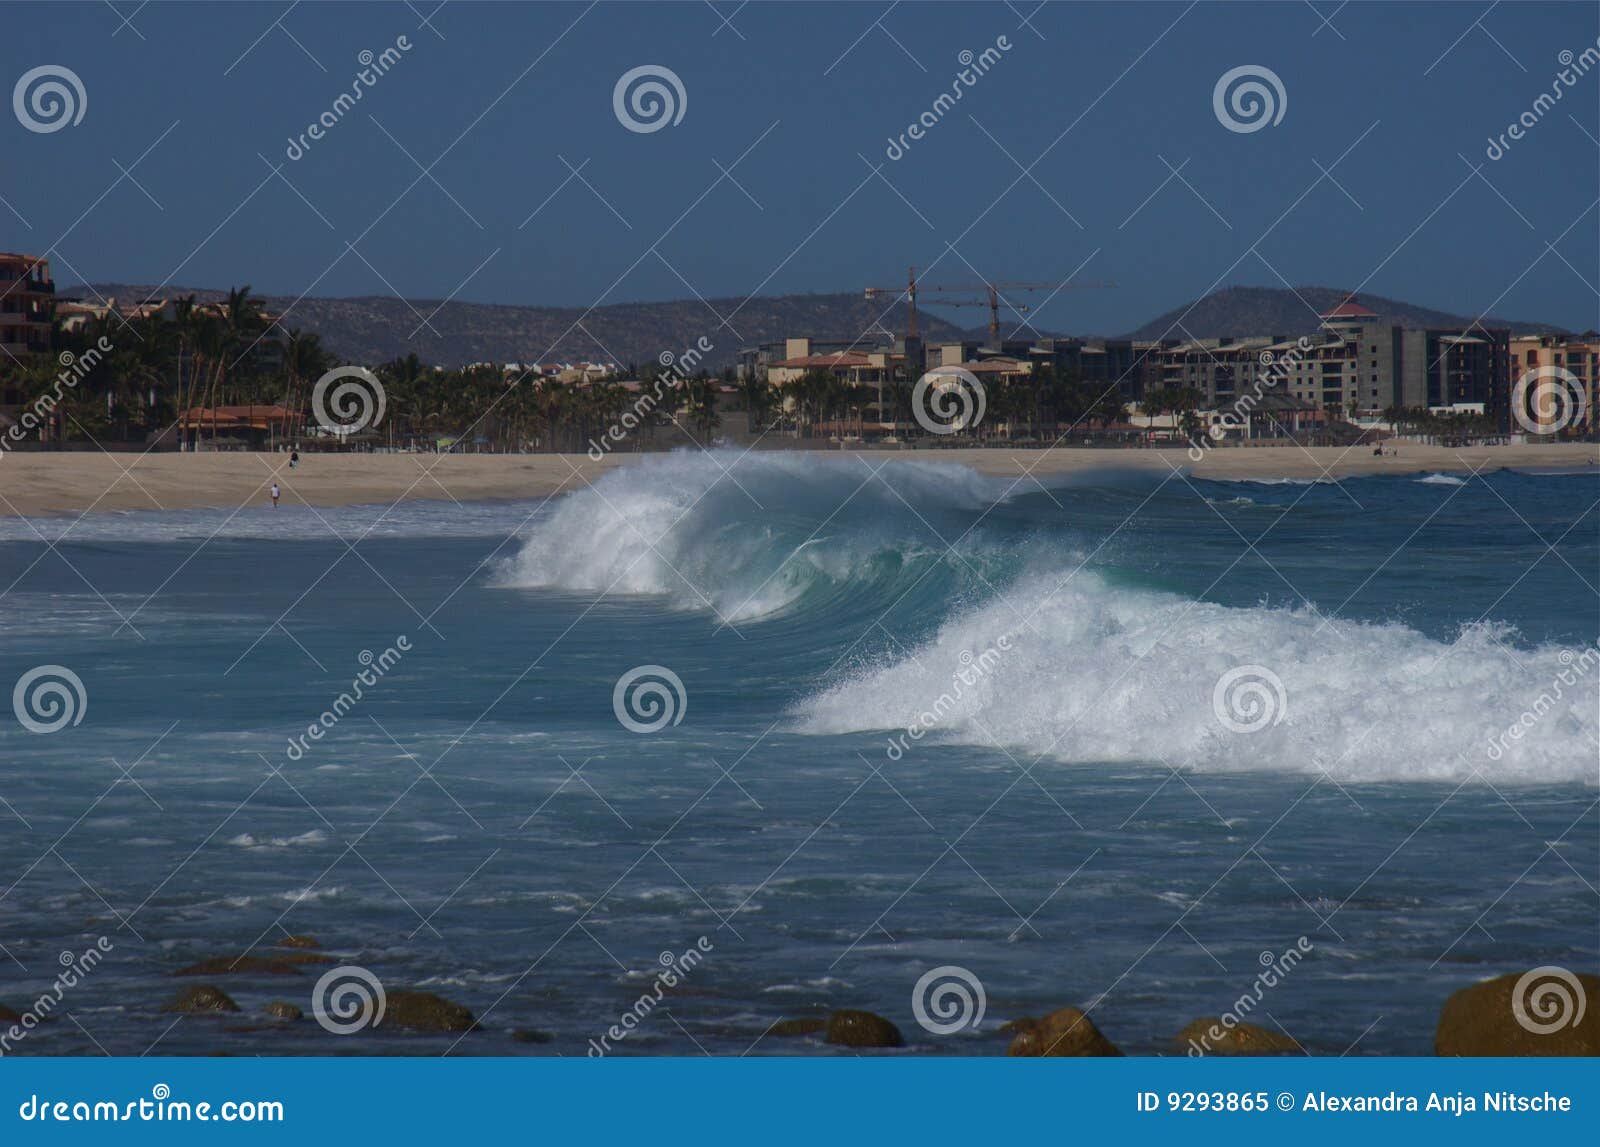 surf at costa azul los cabos mexico 1